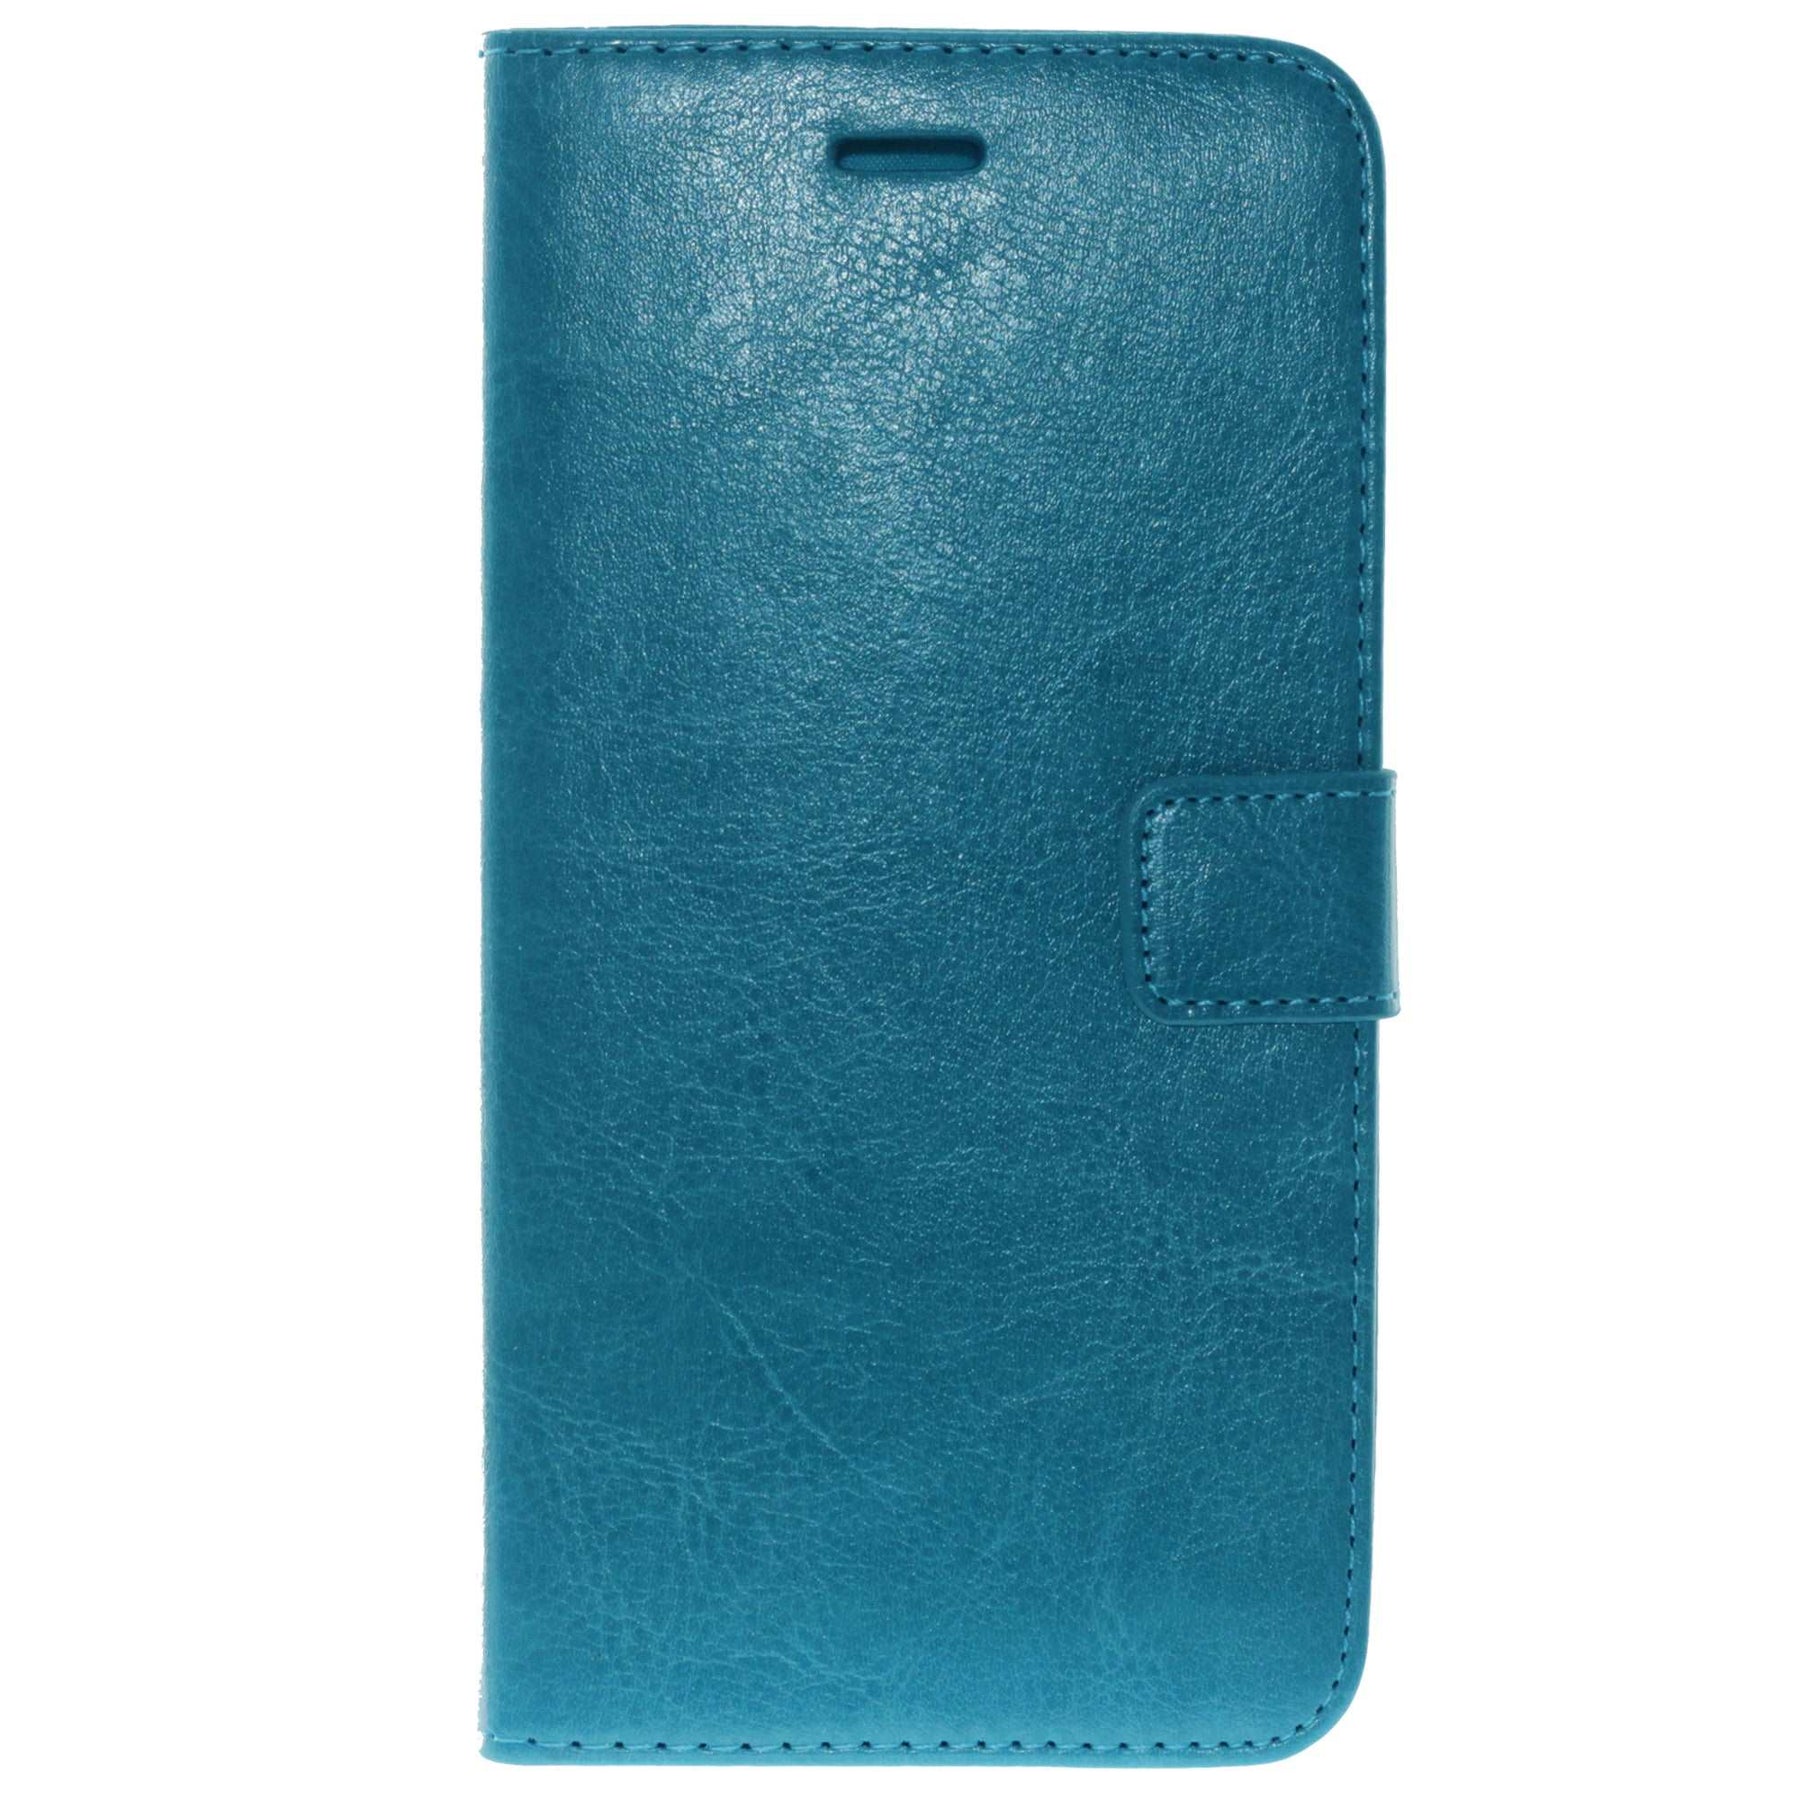 Apple iPhone 6Plus Leather Wallet Case Color Blue